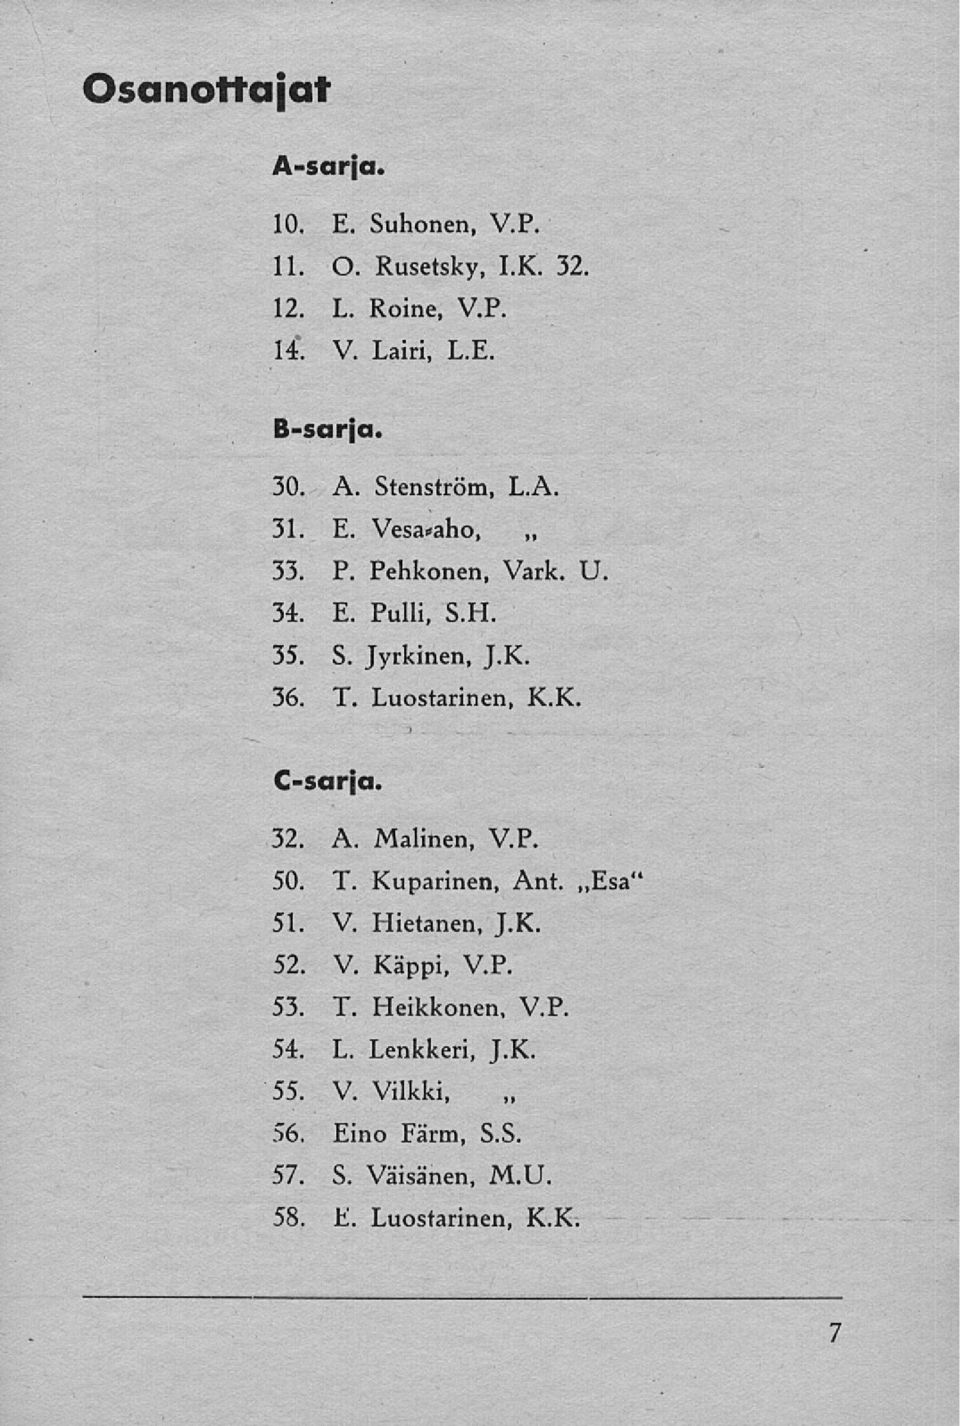 Luostarinen, K.K C-sarja. 32. A. Malinen, V.P. 50. T. Kuparinen, Ant. Esa" 51. V Hietanen, J.K. 52. V. Käppi, V.